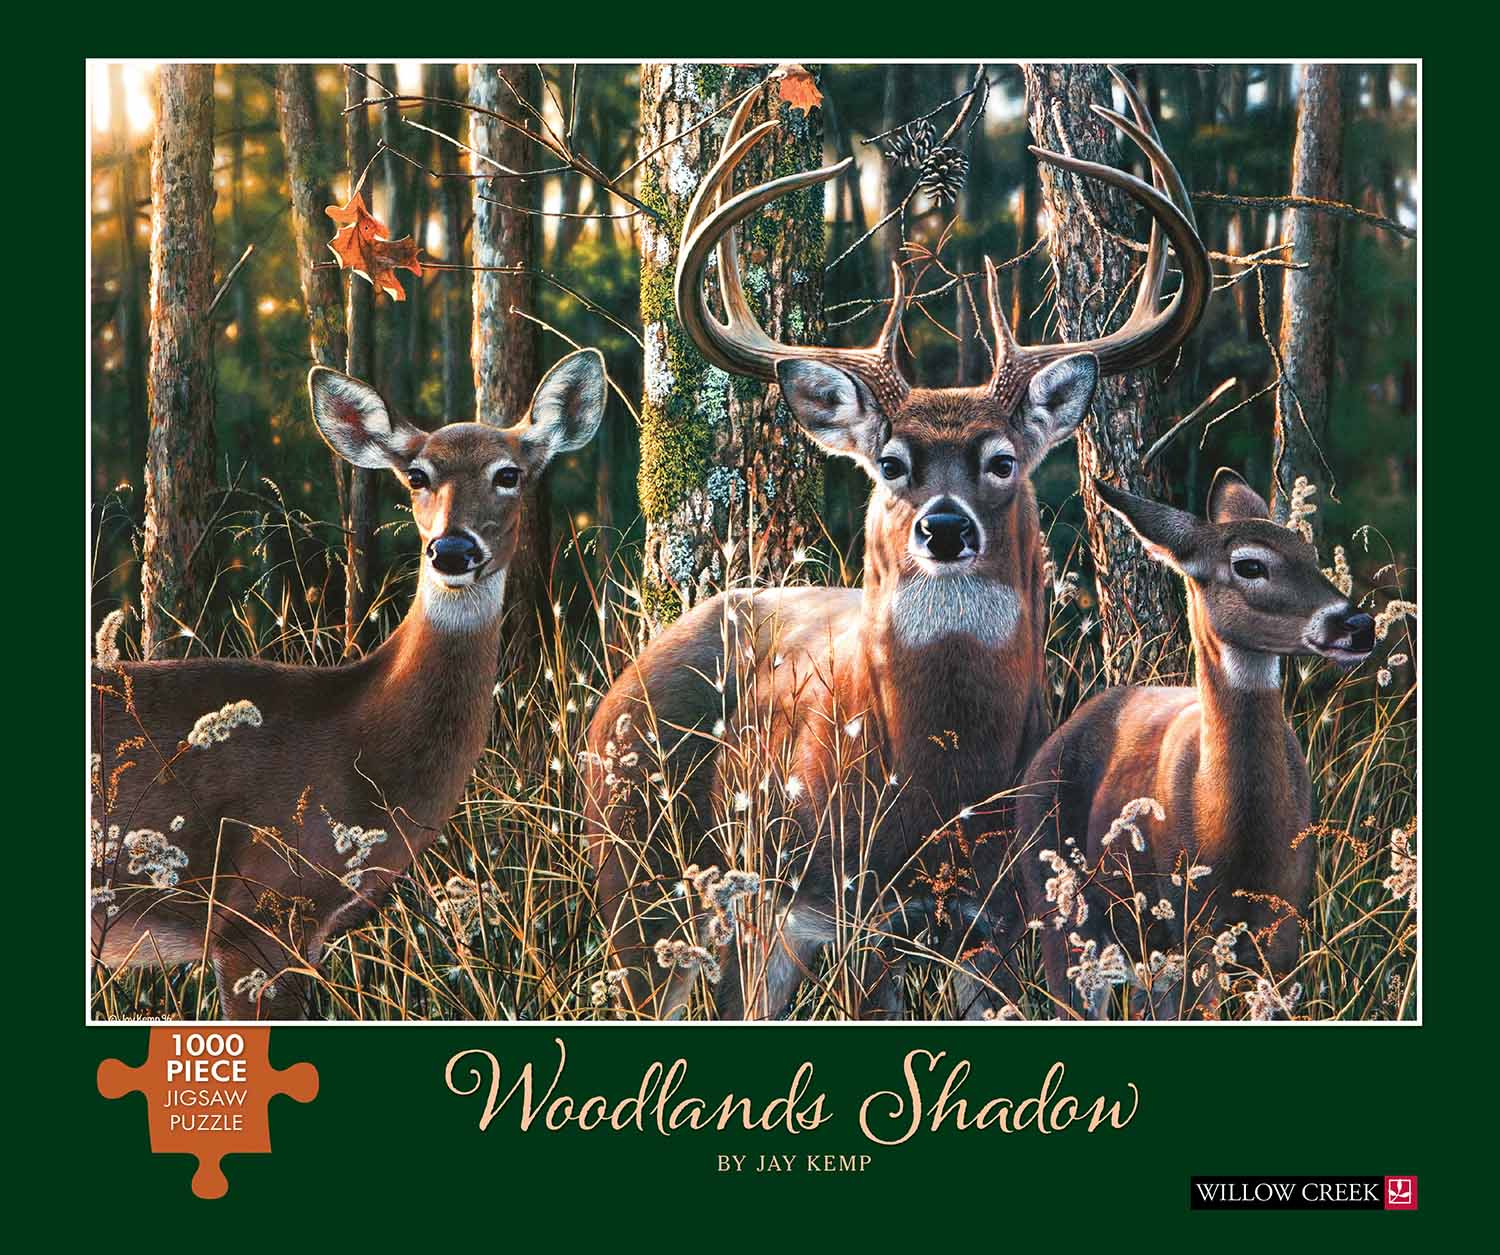 Puzzle Woodlands Shadows - 1000 piece